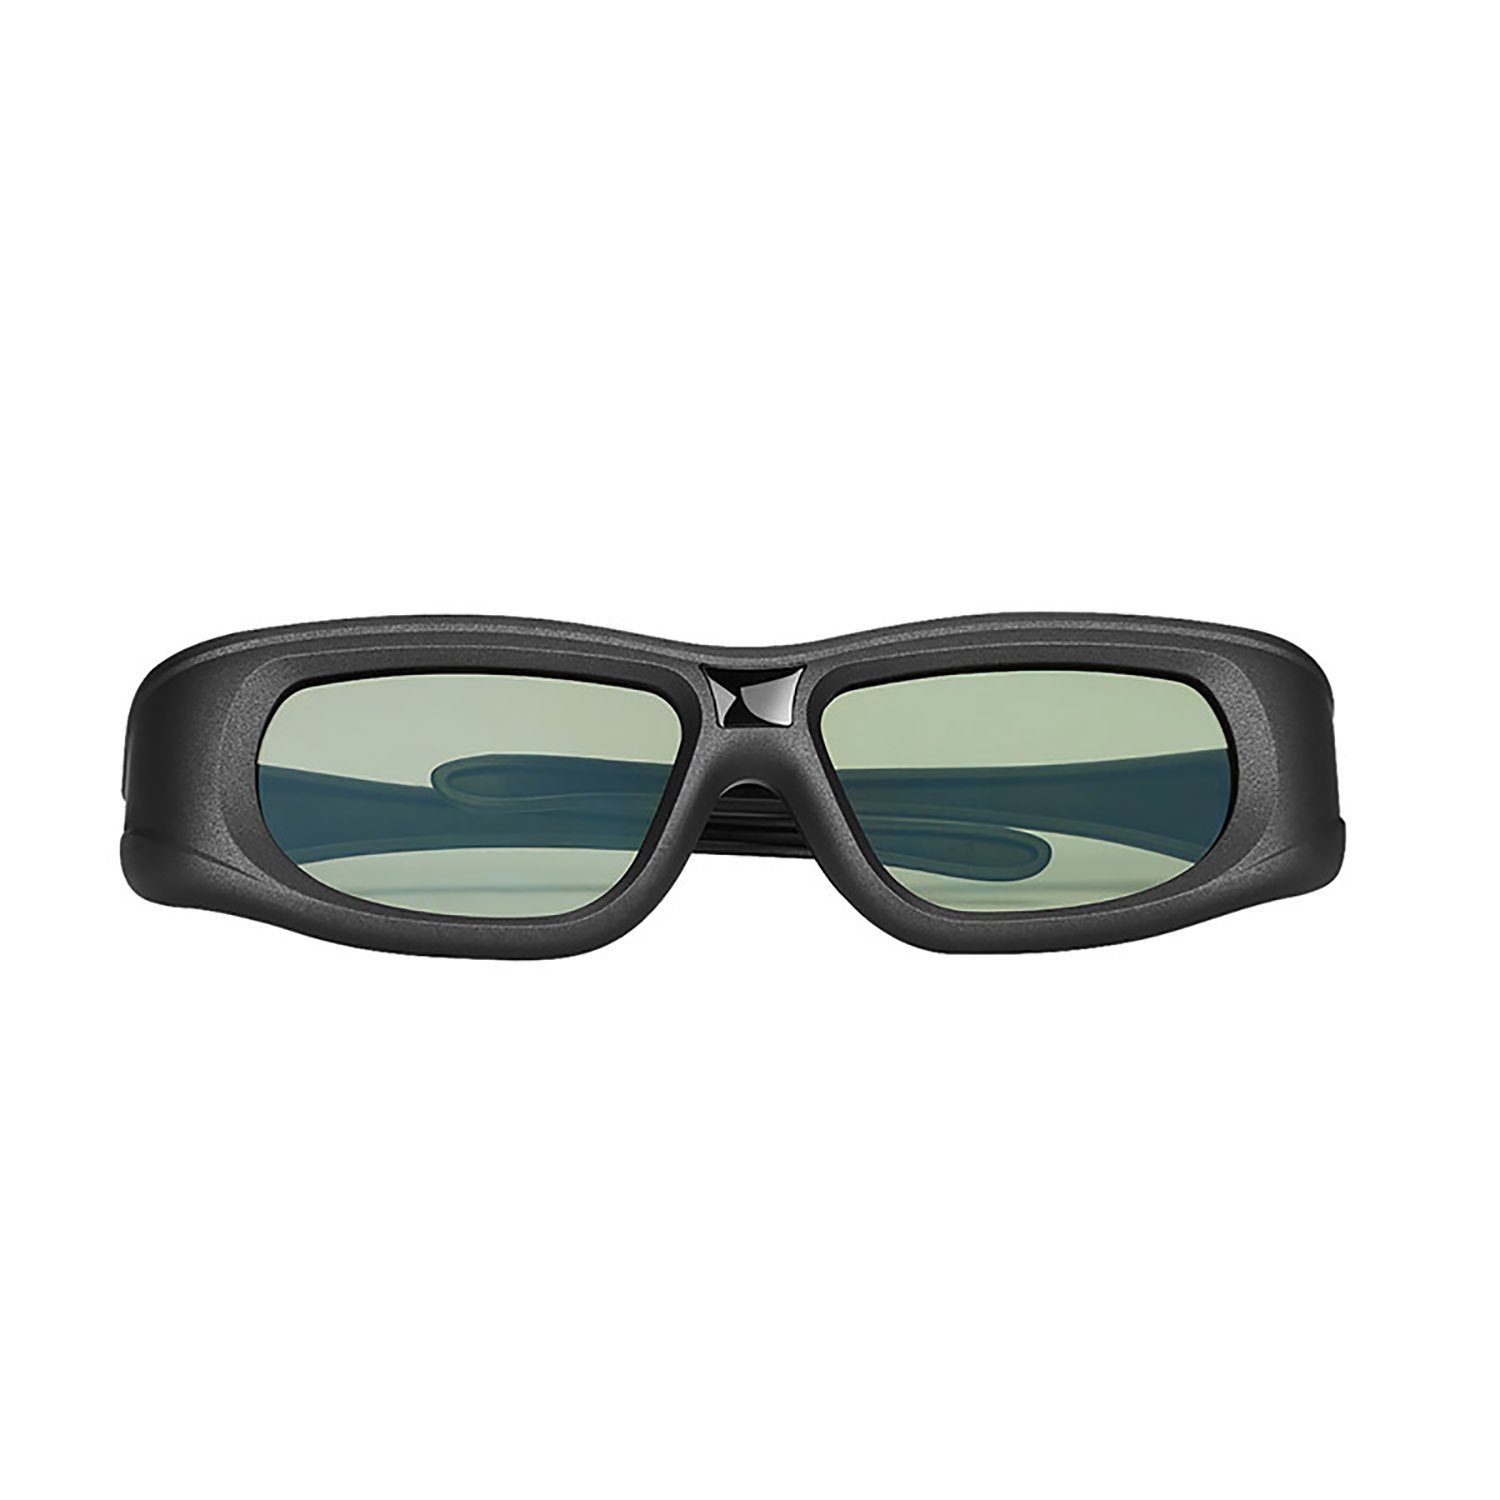 TPFNet 3D-Brille, Aktive 3D Shutter Brille für Bluetooth / RF 3D Fernseher  von Samsung, Panasonic, Epson, Sony etc. - wiederaufladbar - Schwarz - 5  Stück